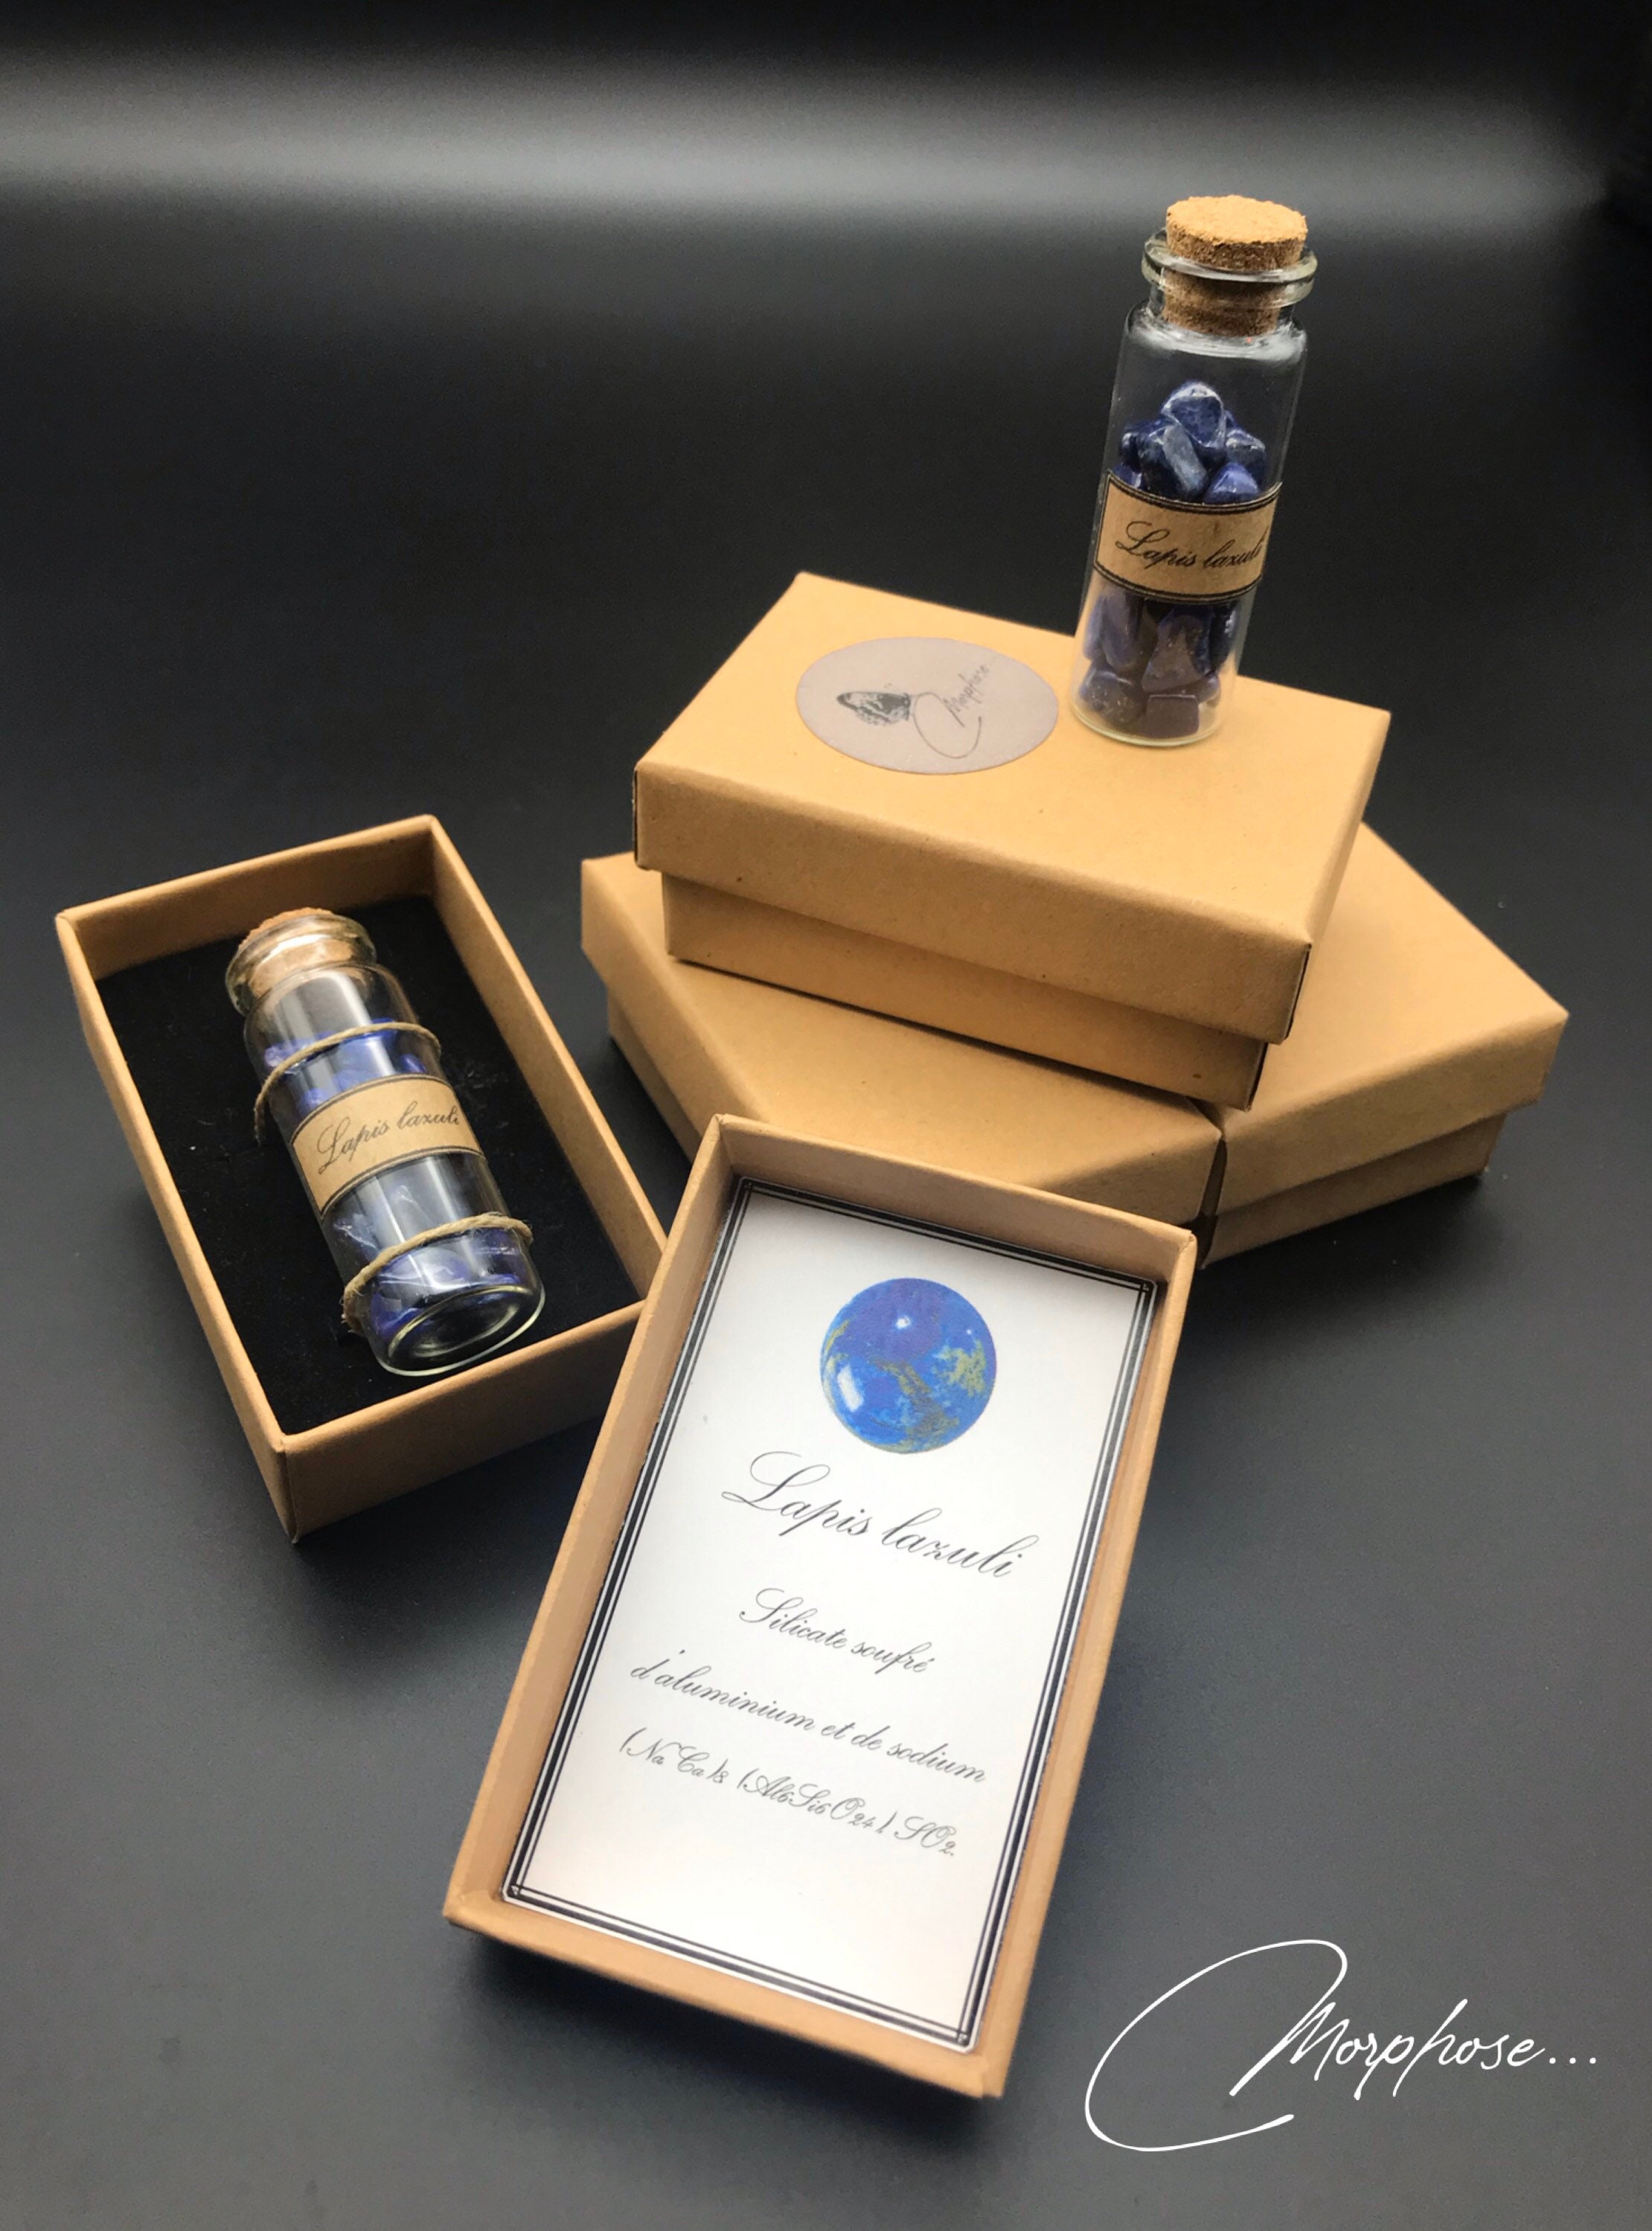 Petite Fiole de Verre Remplie Lapis Lazuli en Coffret. Décoration Pour Cabinet Curiosités